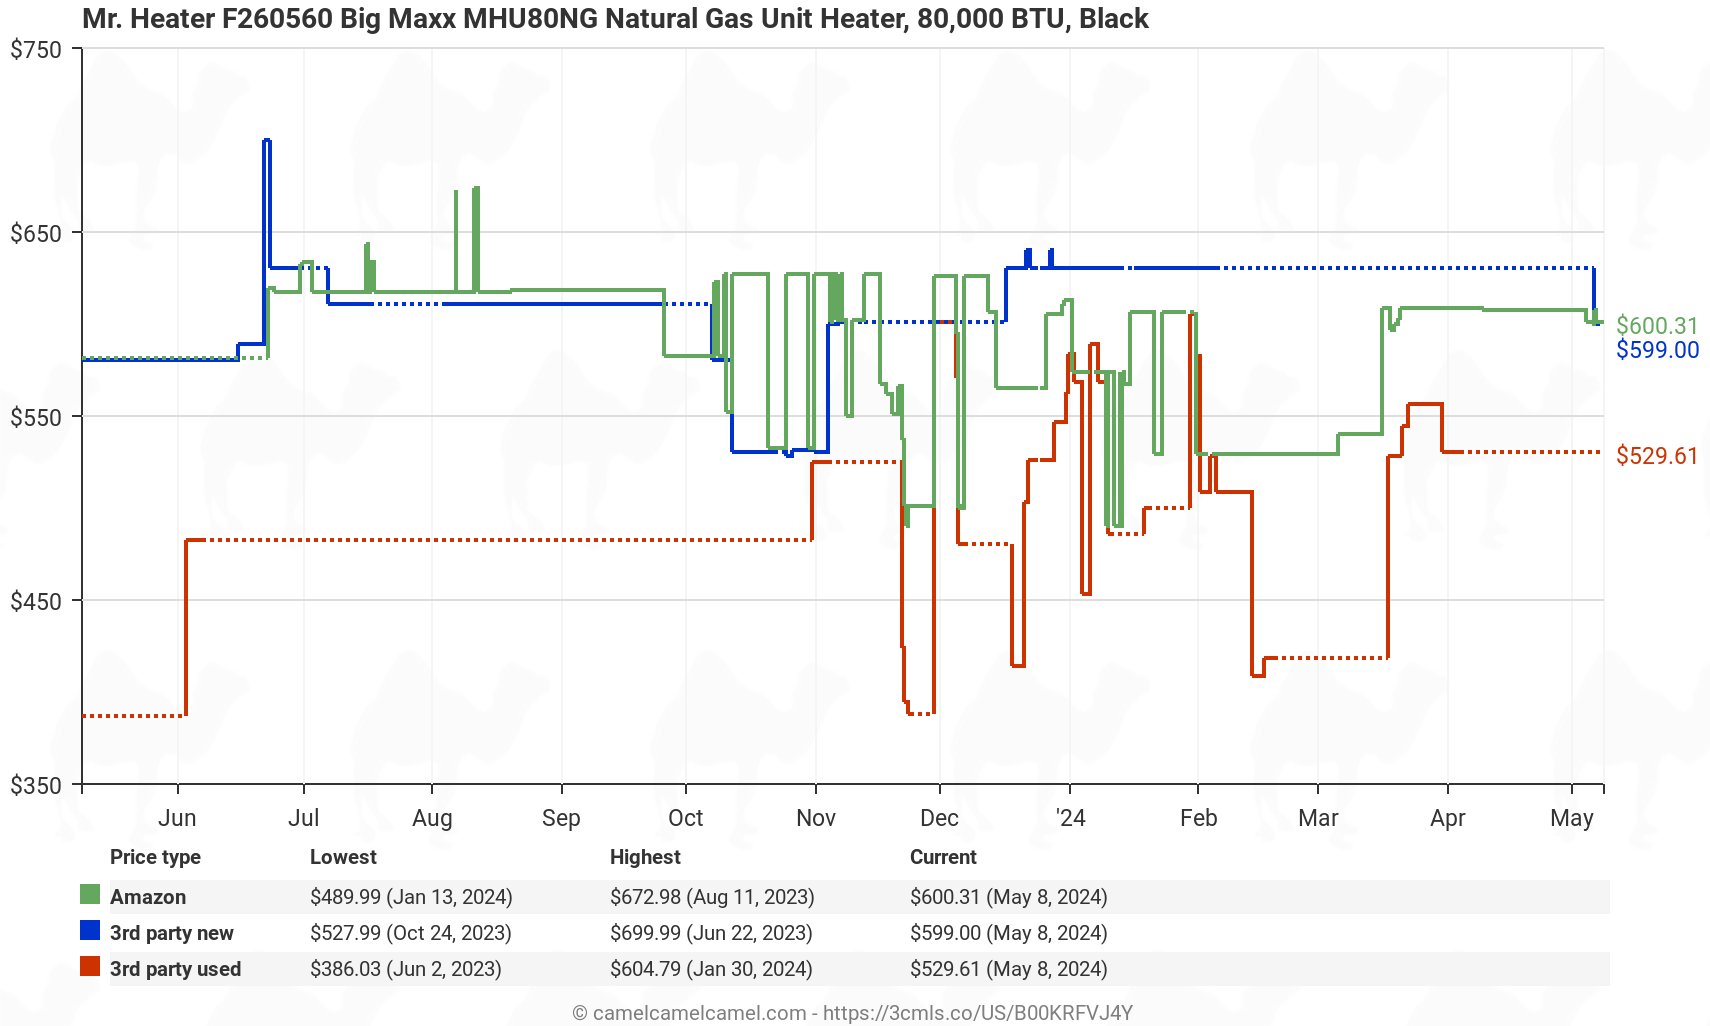 Mr. Heater F260560 Big Maxx MHU80NG Natural Gas Unit Heater - Price History: B00KRFVJ4Y